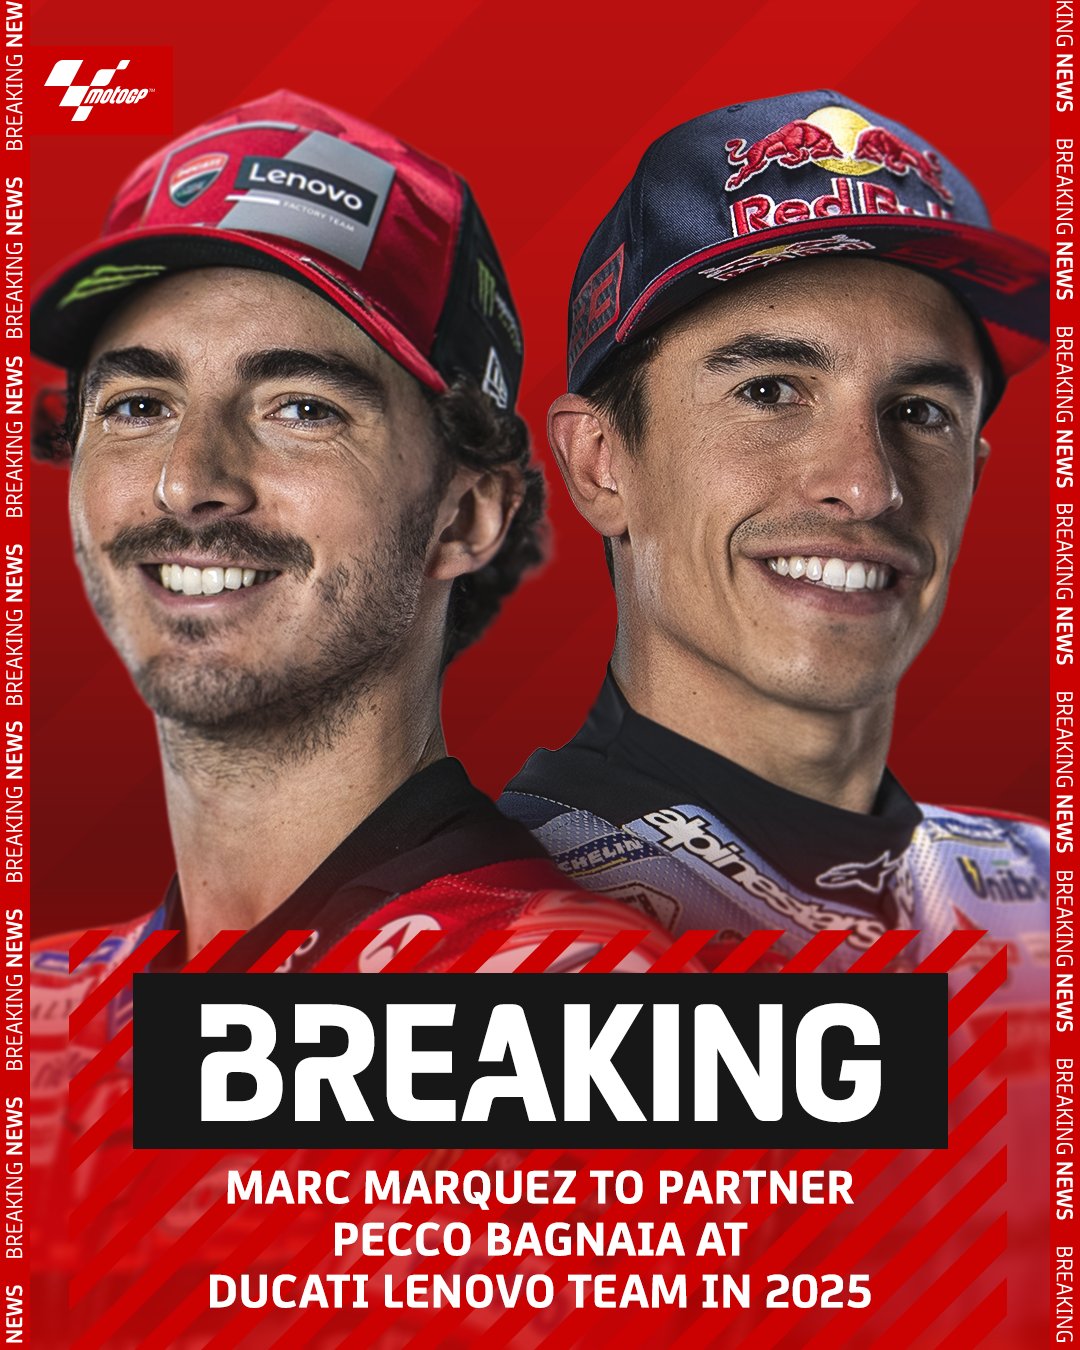 Официально: Пекко Баньяя и Марк Маркес - новые напарники в Ducati Lenovo Team с 2025 года